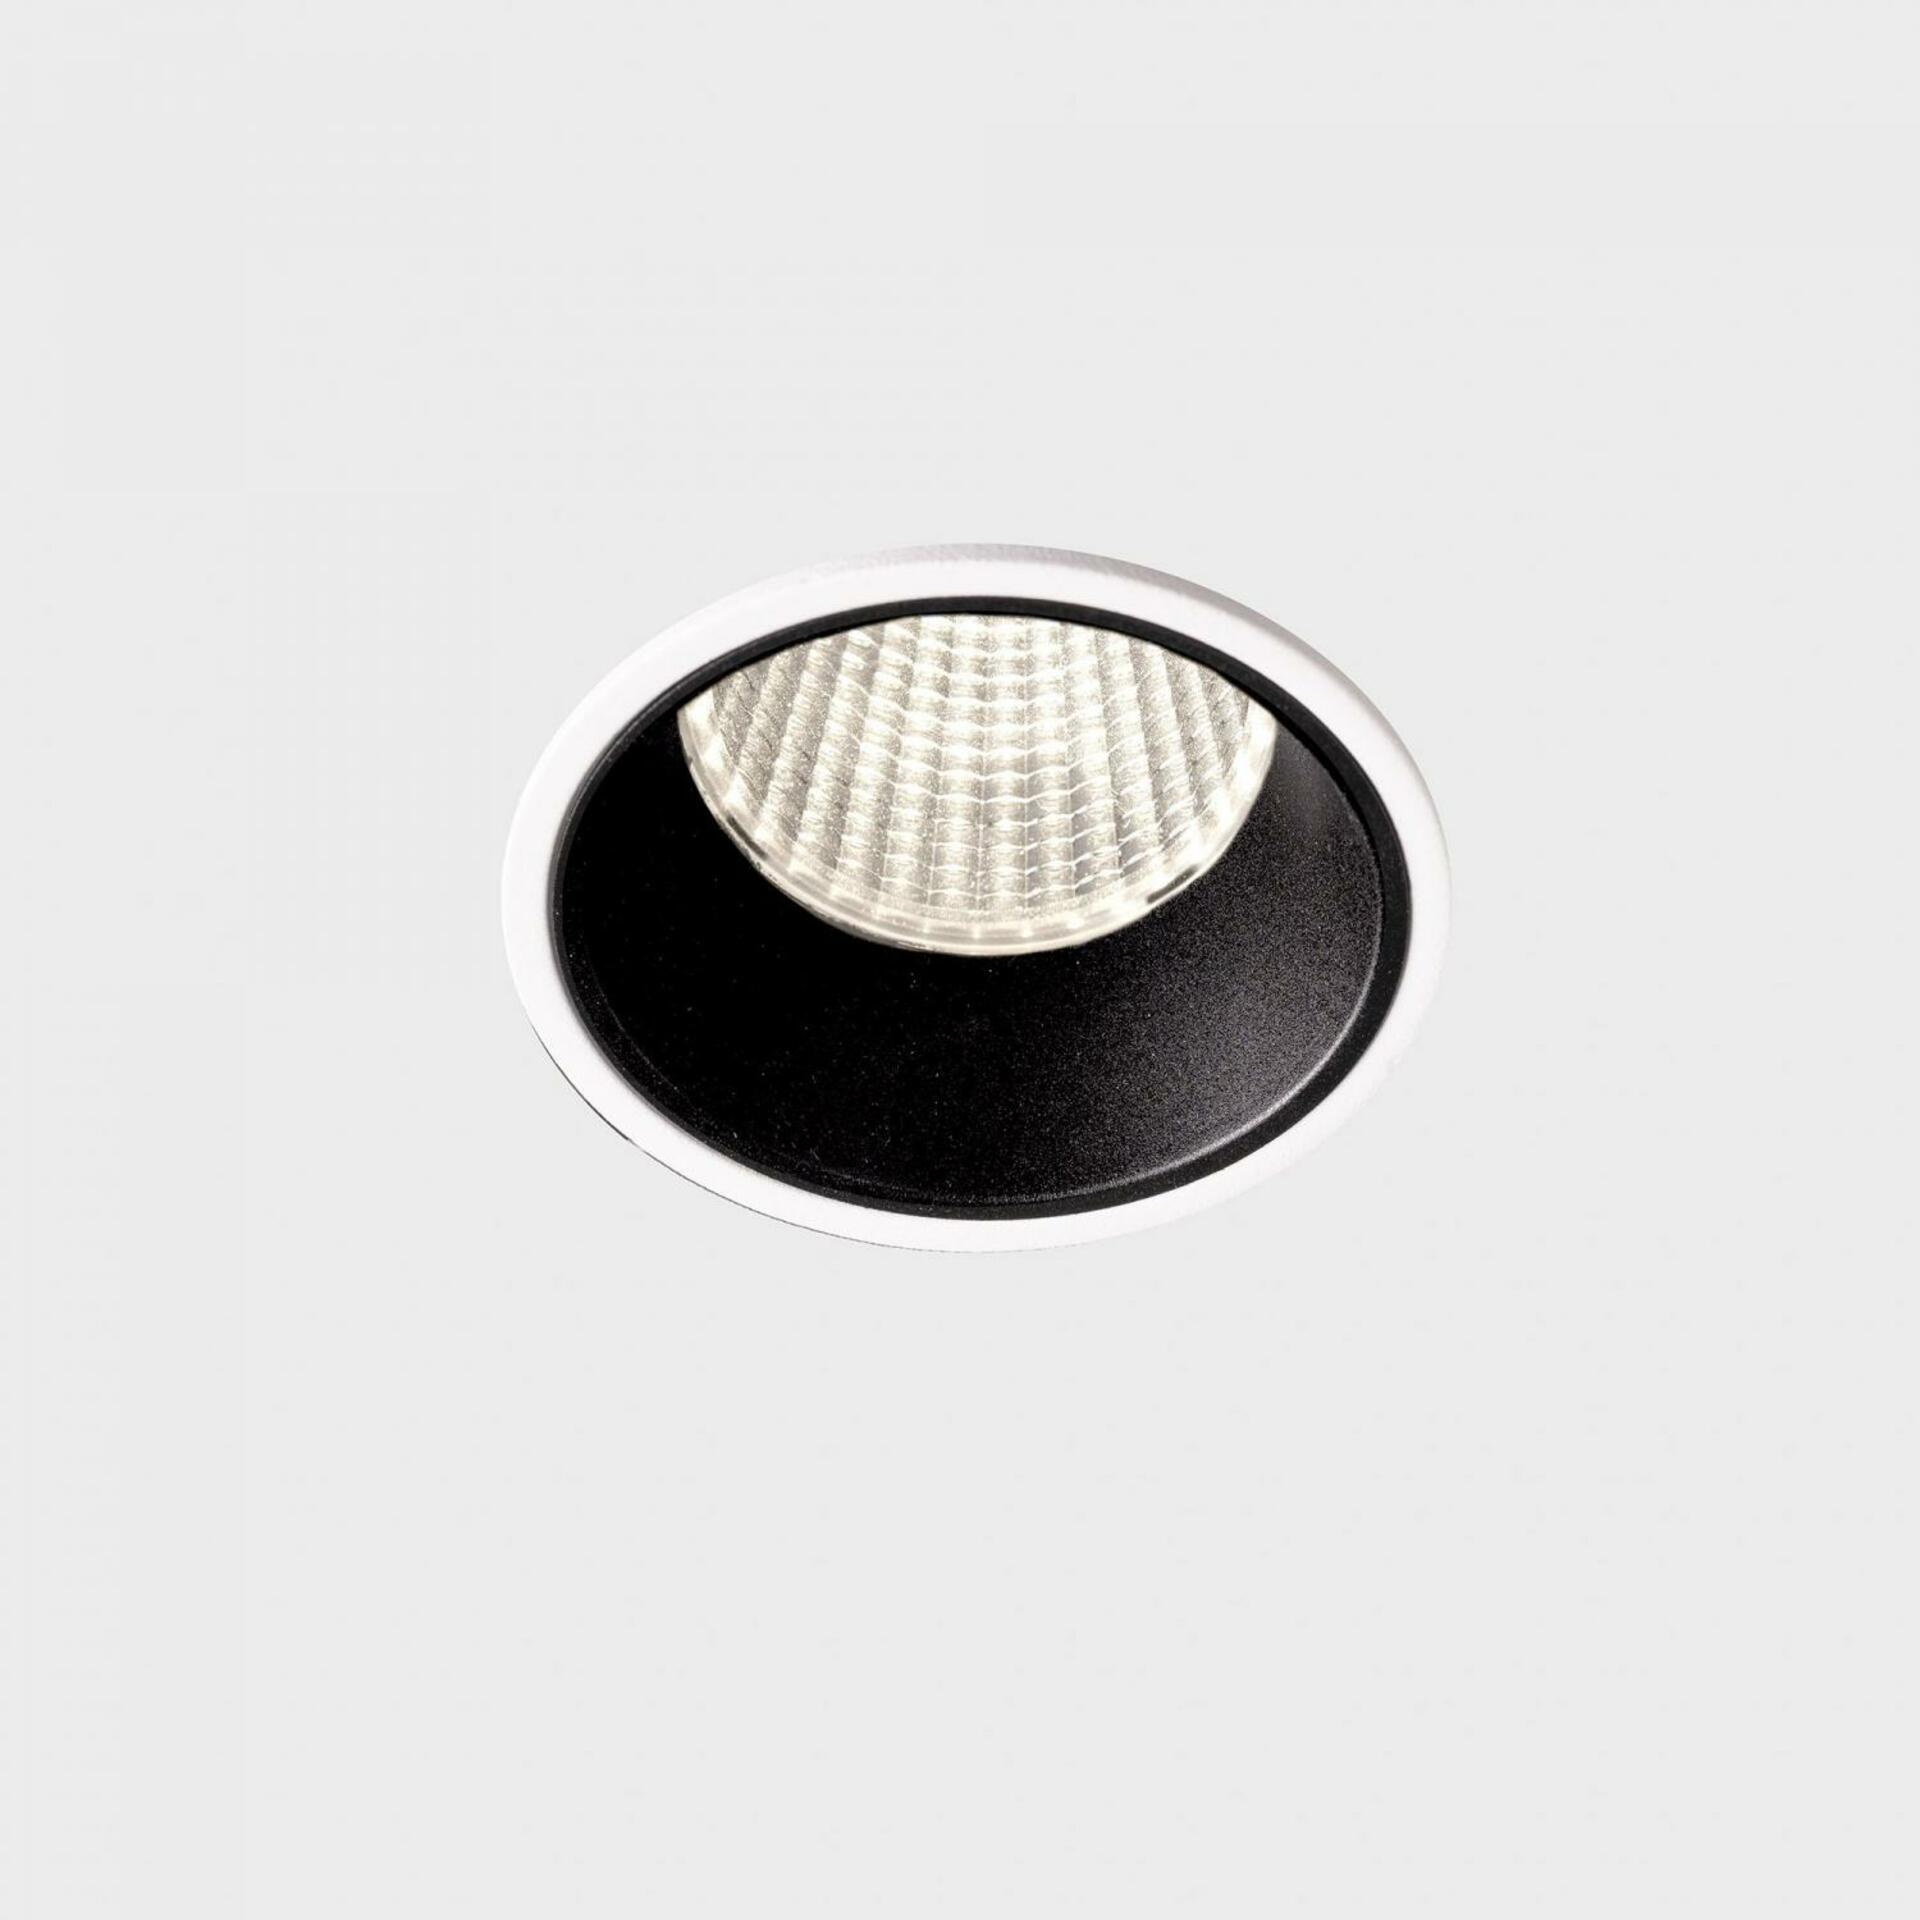 KOHL LIGHTING KOHL-Lighting VERSUS zapuštěné svítidlo s rámečkem pr. 60 mm bílá-černá 38° 5 W CRI 80 3000K DALI